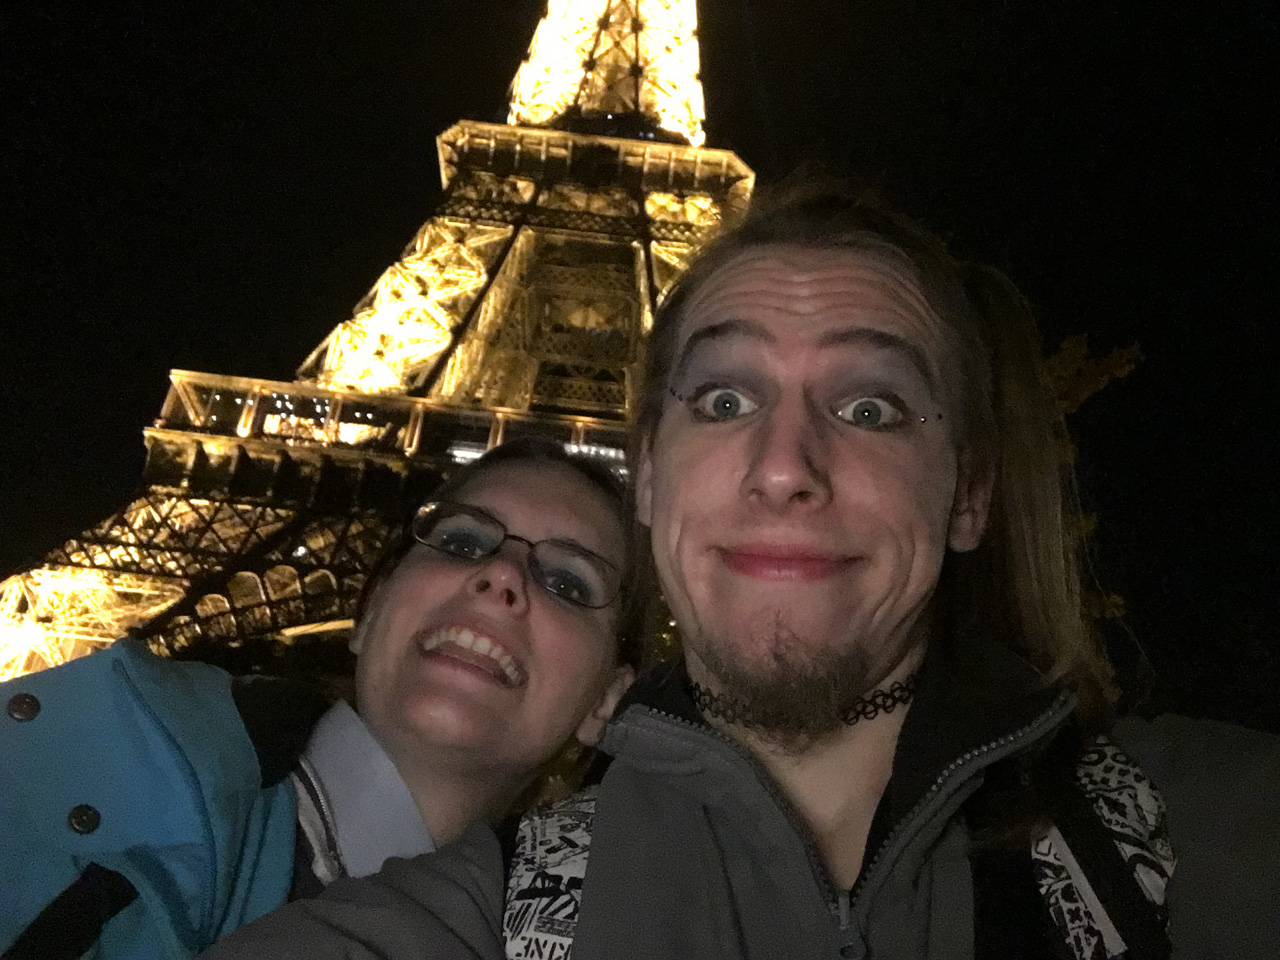 Auch das Schleppen unserer schweren Koffer hielt uns nicht davon ab, gut gelaunt den Eiffelturm zu besichtigen.